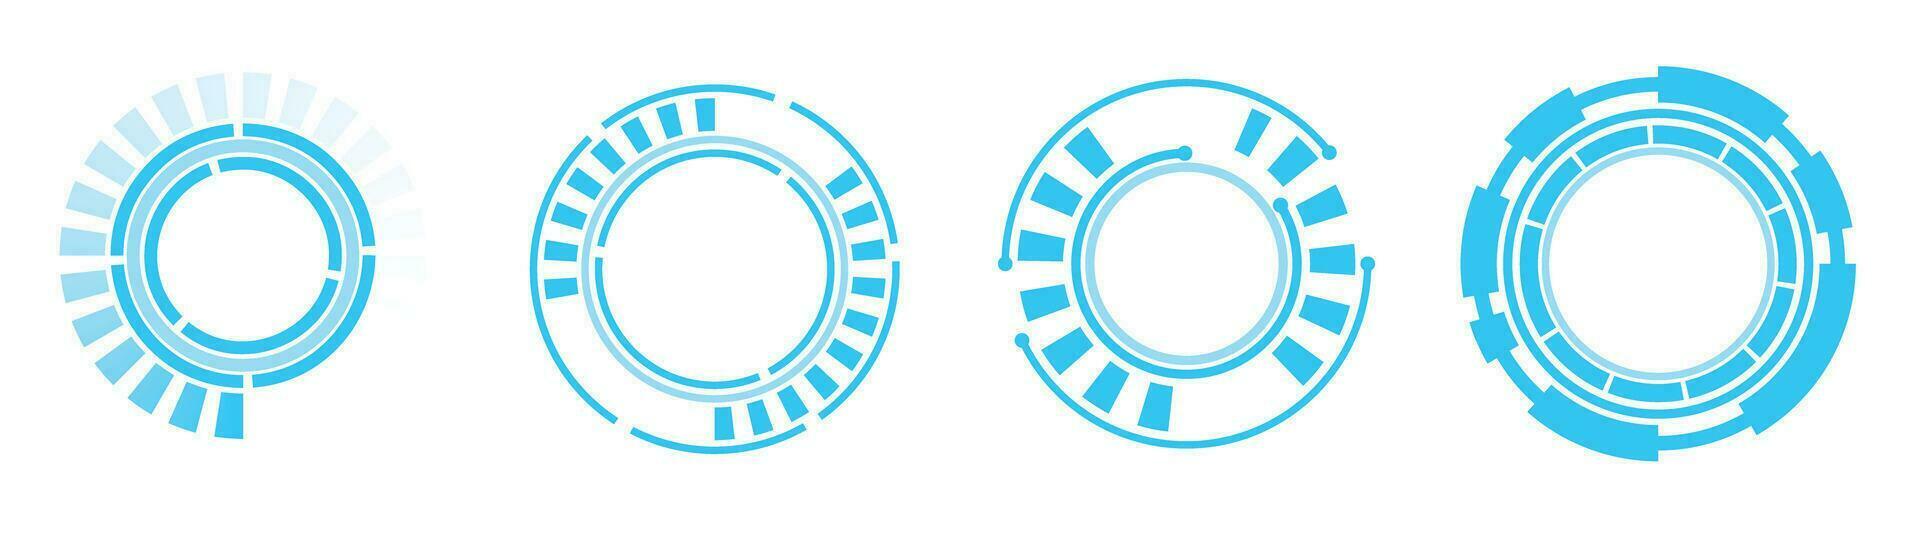 Blau Kreis Rand Technologie futuristisch sieht aus vektor